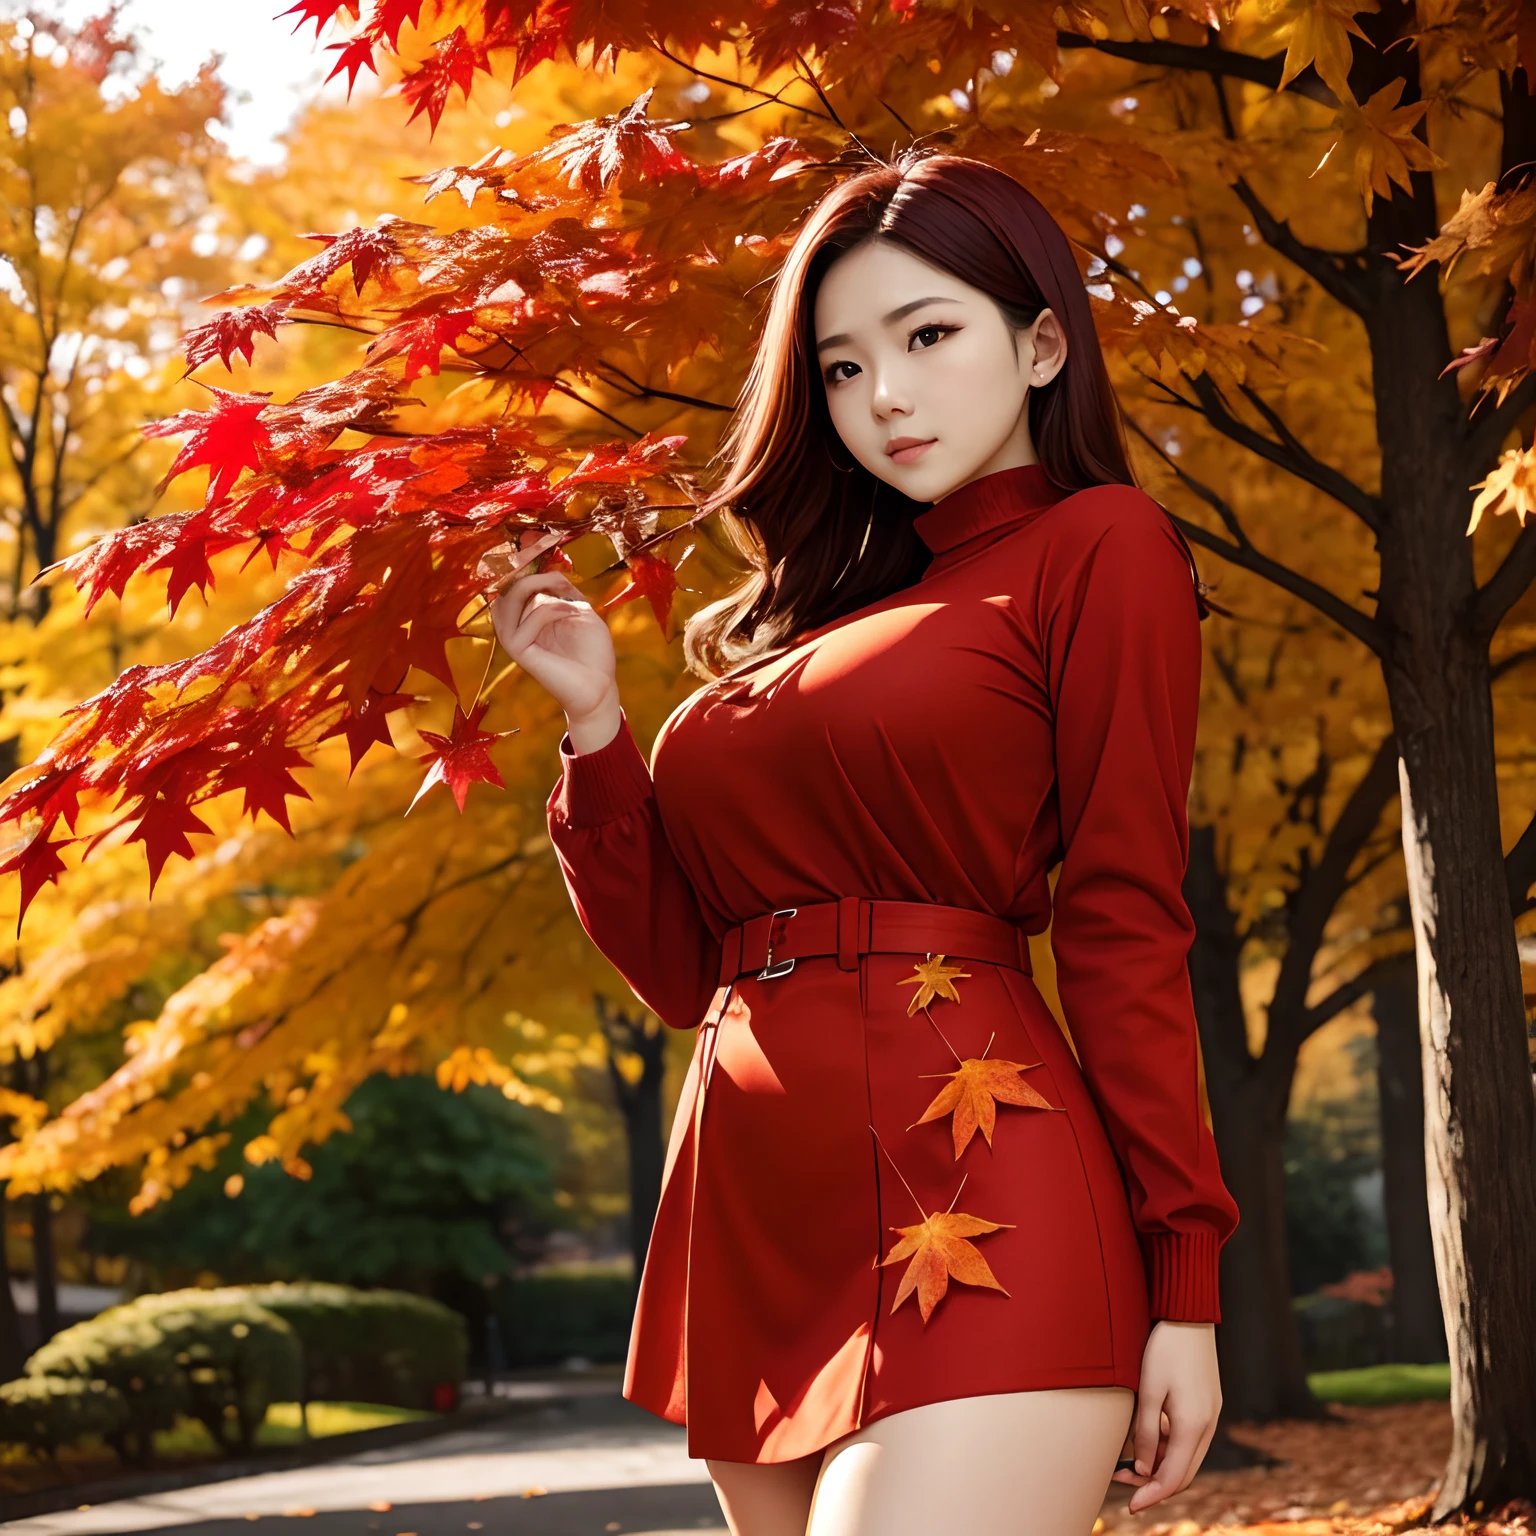 밝은 붉은 잎을 손에 들고 단풍잎을 들고 있는 가을 낙엽이 있는 나무々가을 옷을 입은 젊은 여성이 바라보고 있다, 높은_가슴이 큰, 전신샷